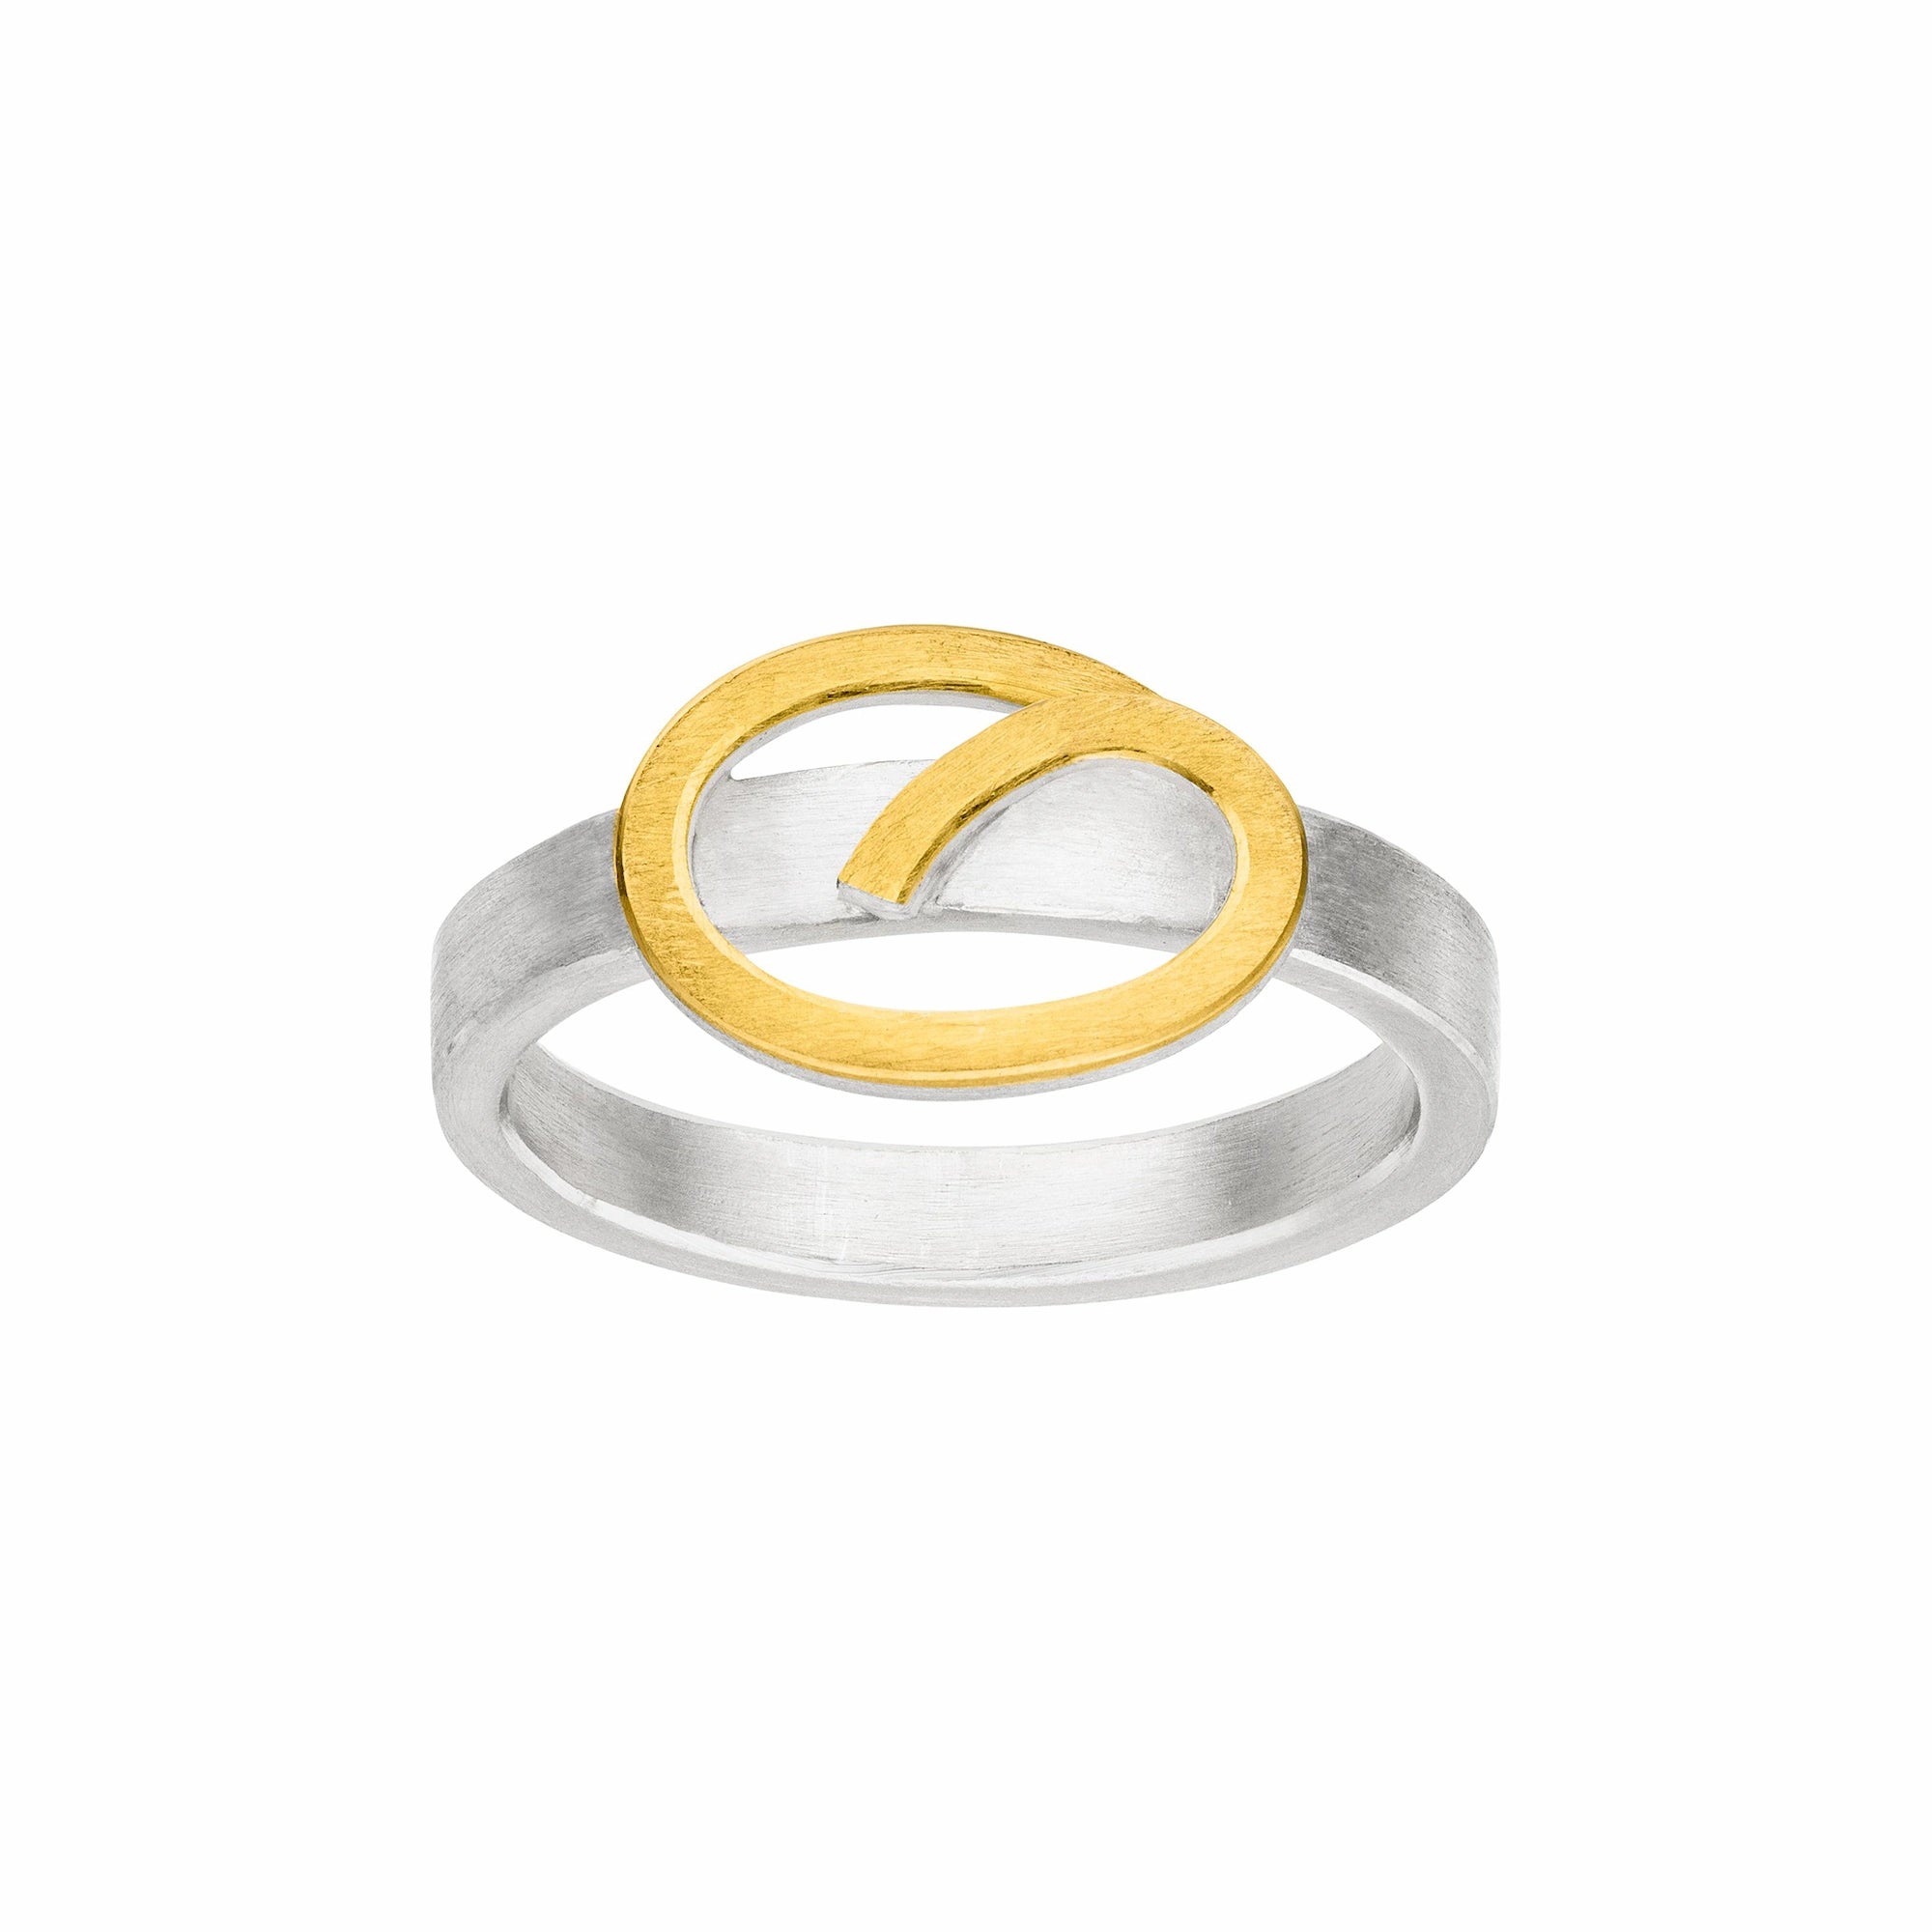 Silberner Ring mit zentralem verschnörkelten Element als Eye-Catcher, welcher mit einer Goldauflage verziert wurde